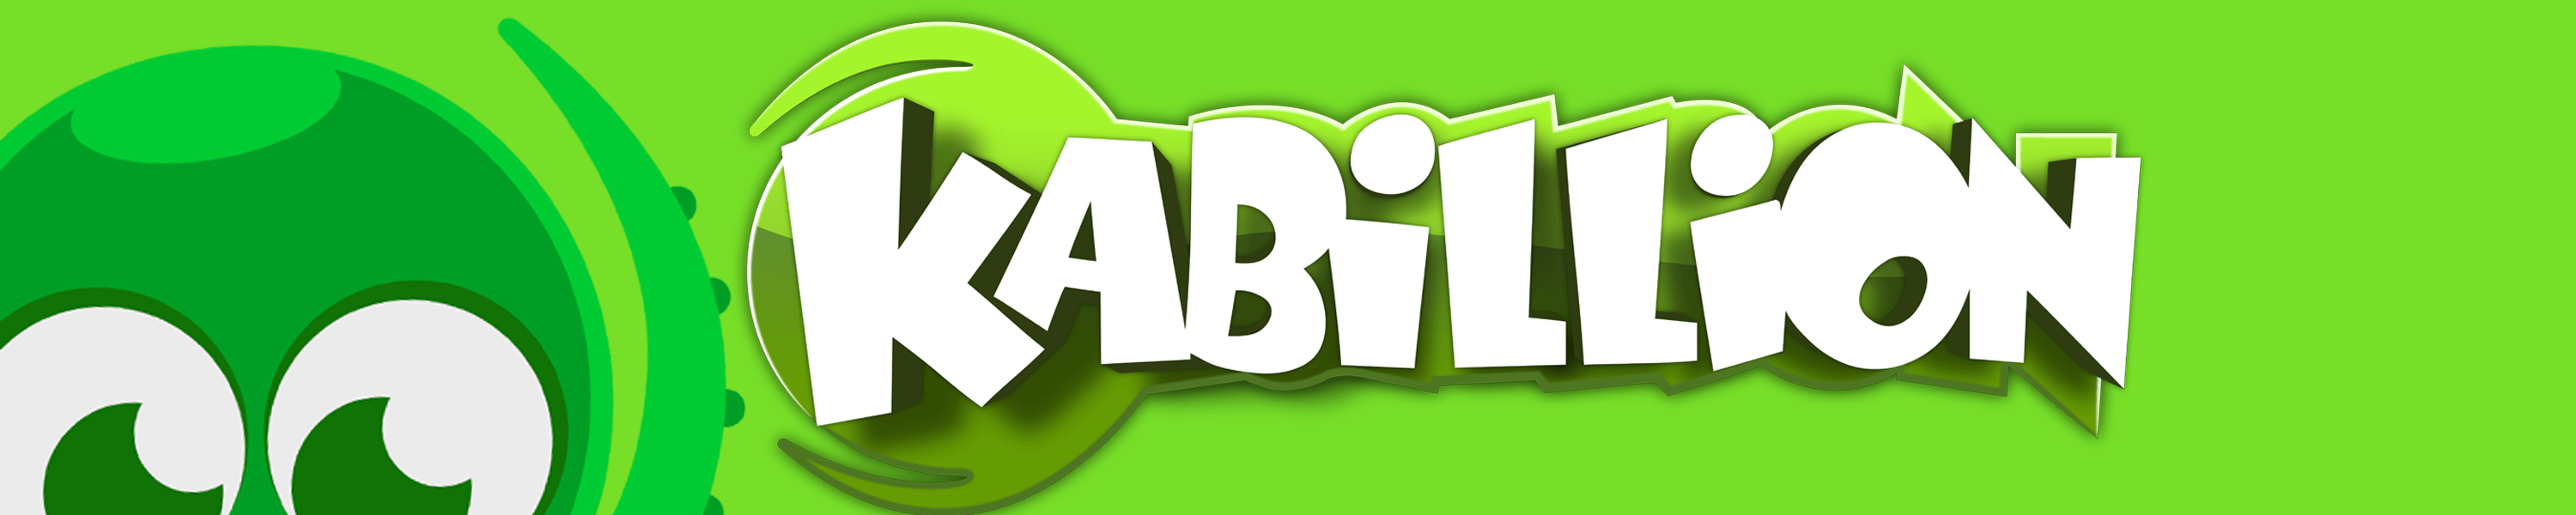 Kabillion Logo - Kabillion